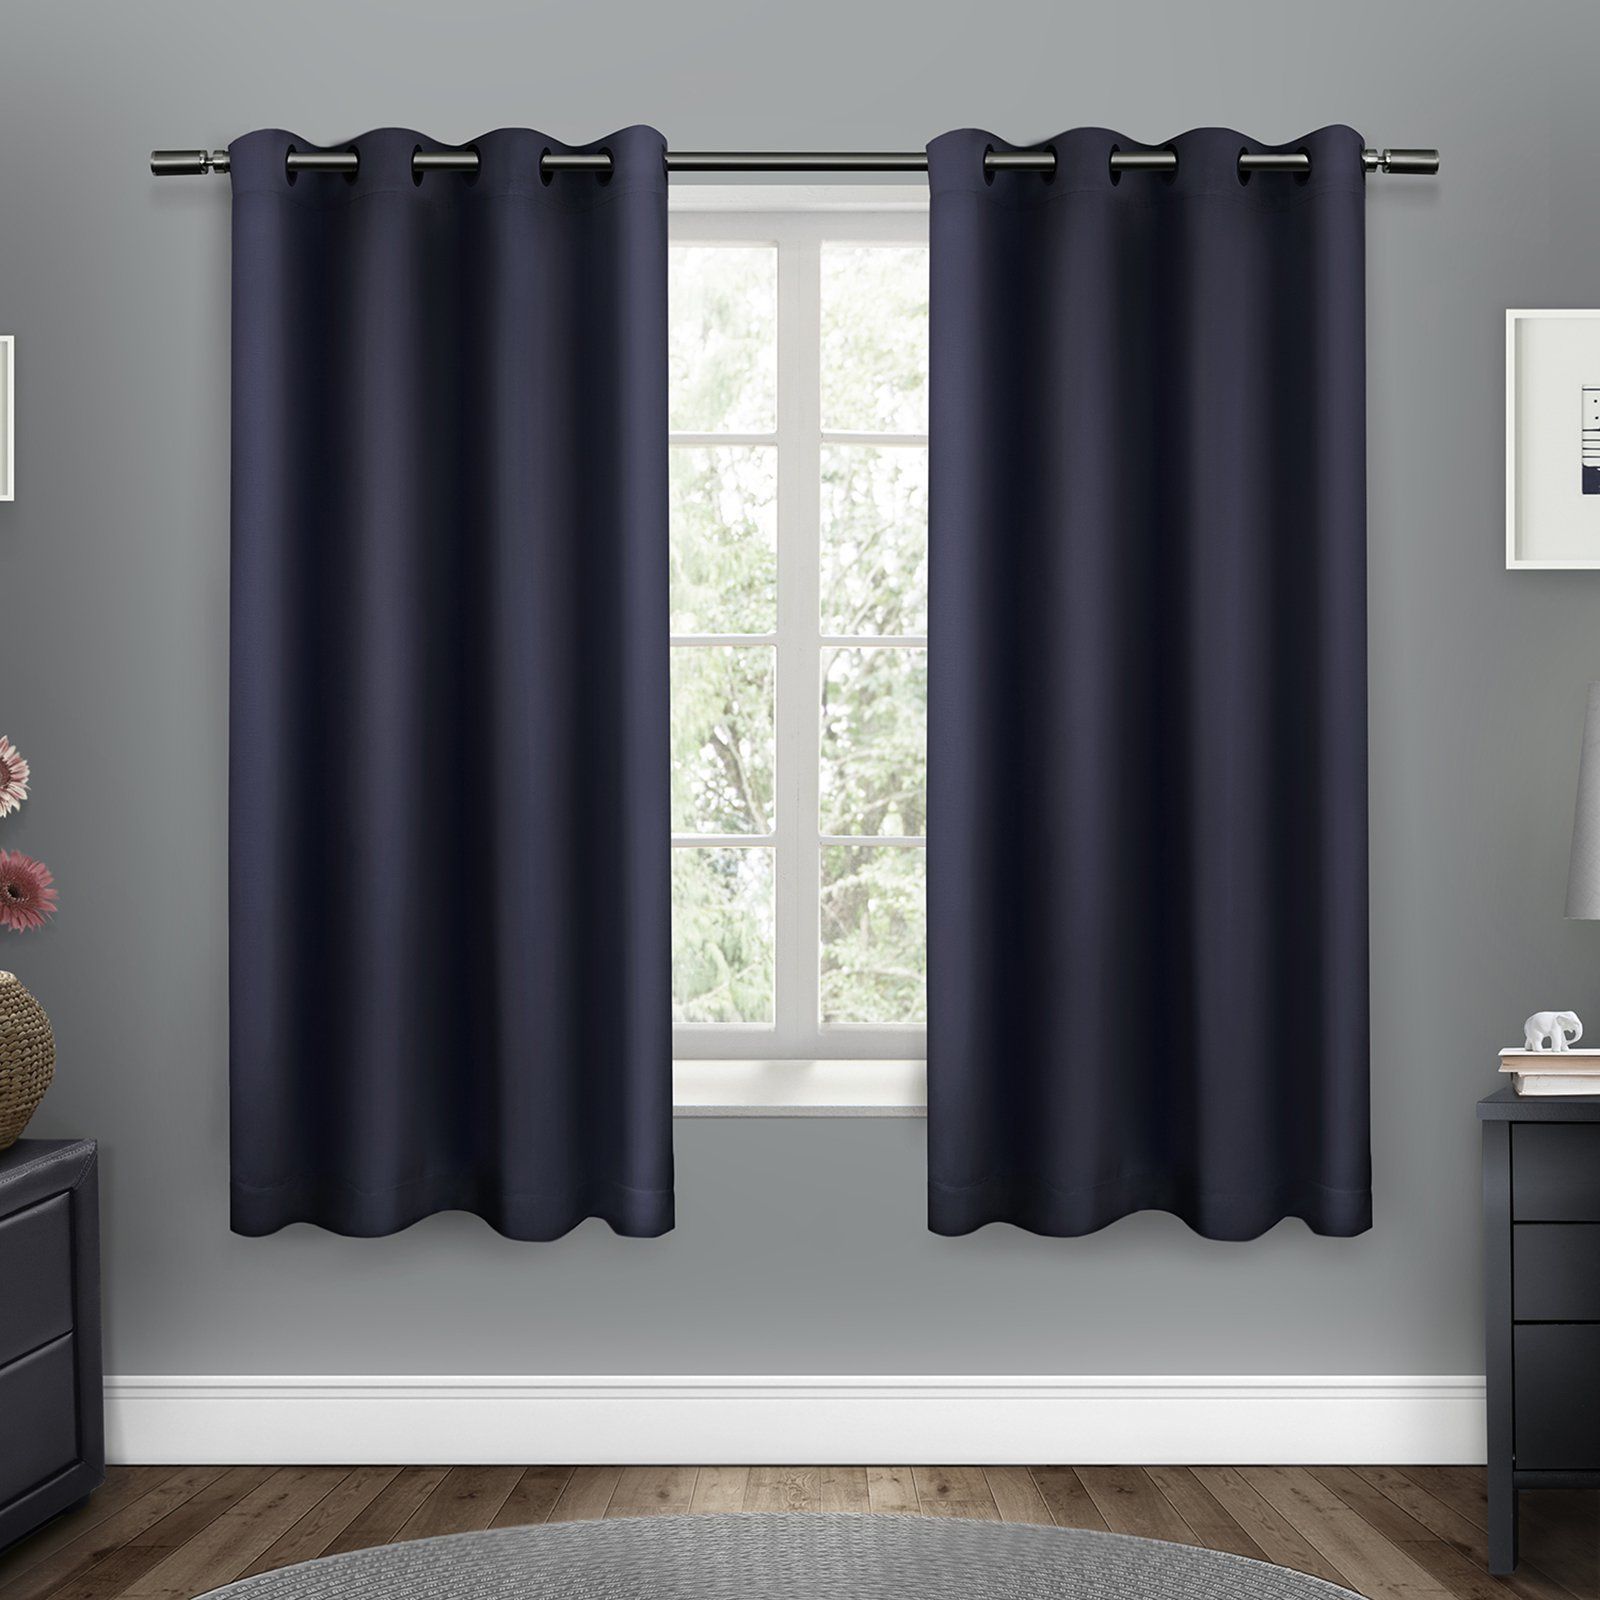 Sateen Woven Blackout Grommet Top Window Curtain Panel Pair For Woven Blackout Curtain Panel Pairs With Grommet Top (View 12 of 30)